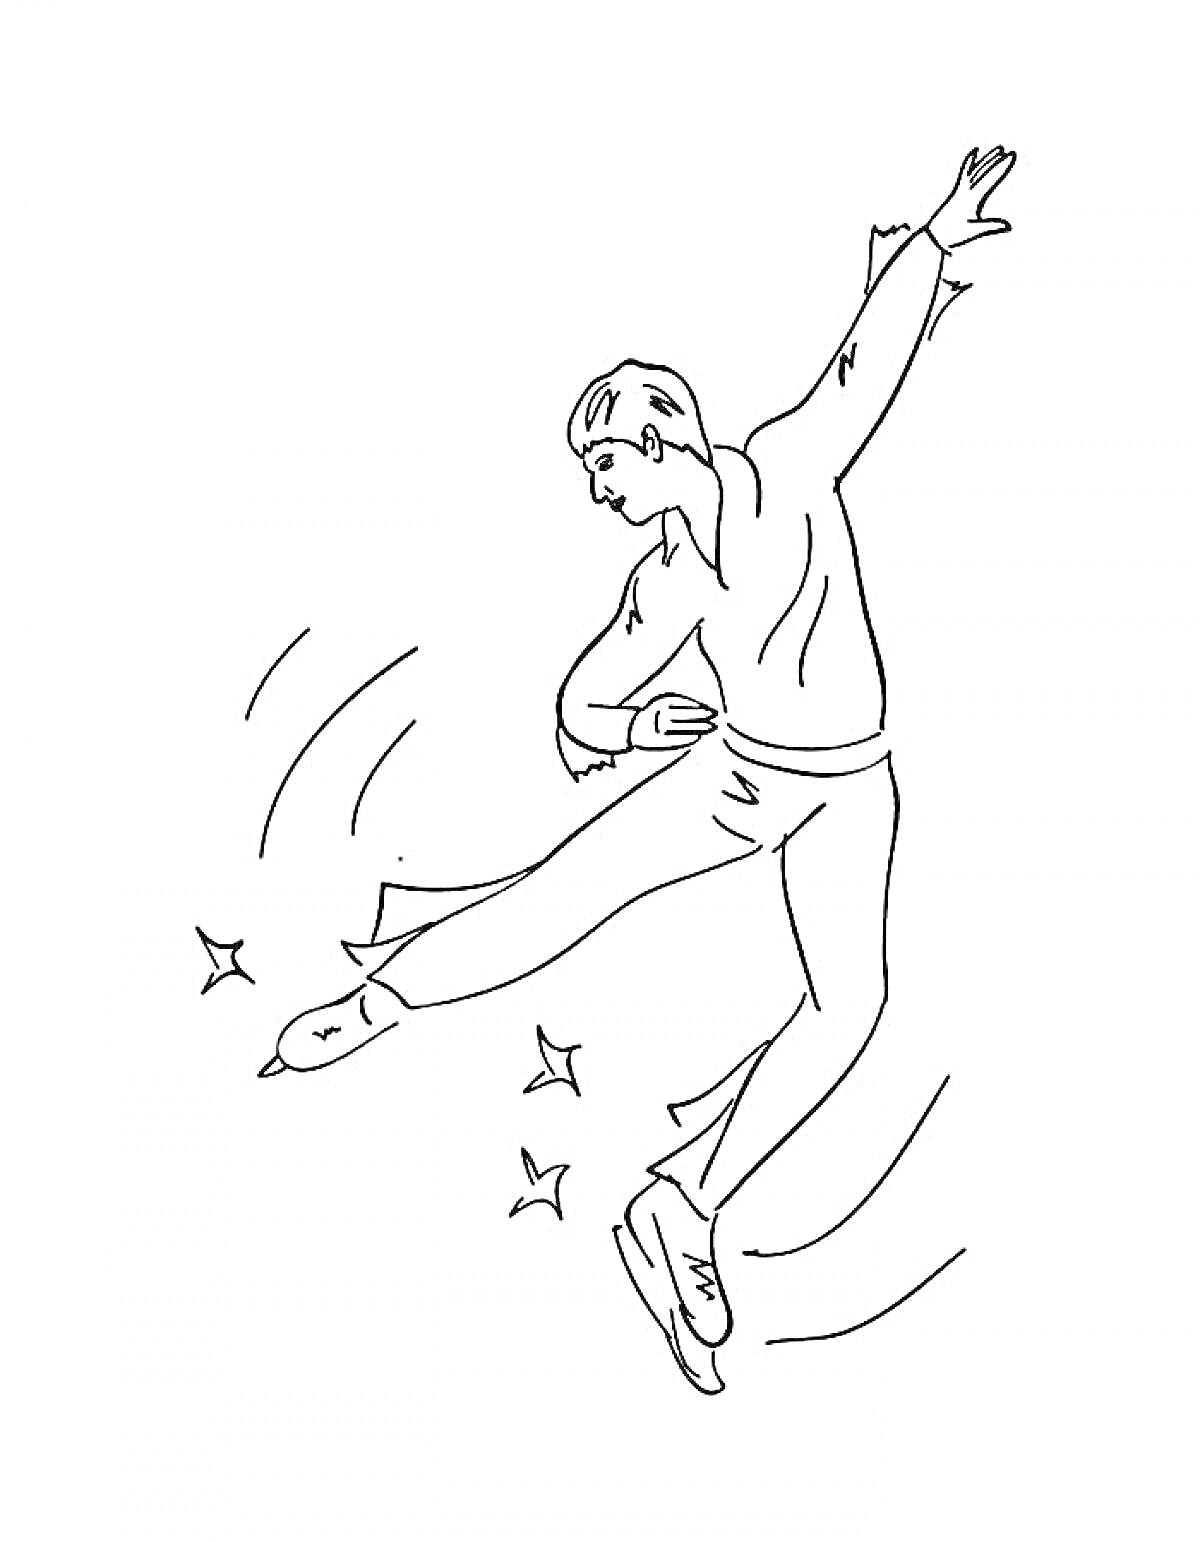 Раскраска Фигурист во время прыжка с поднятой рукой и вытянутой ногой, фигурное катание, звезды, линии движения